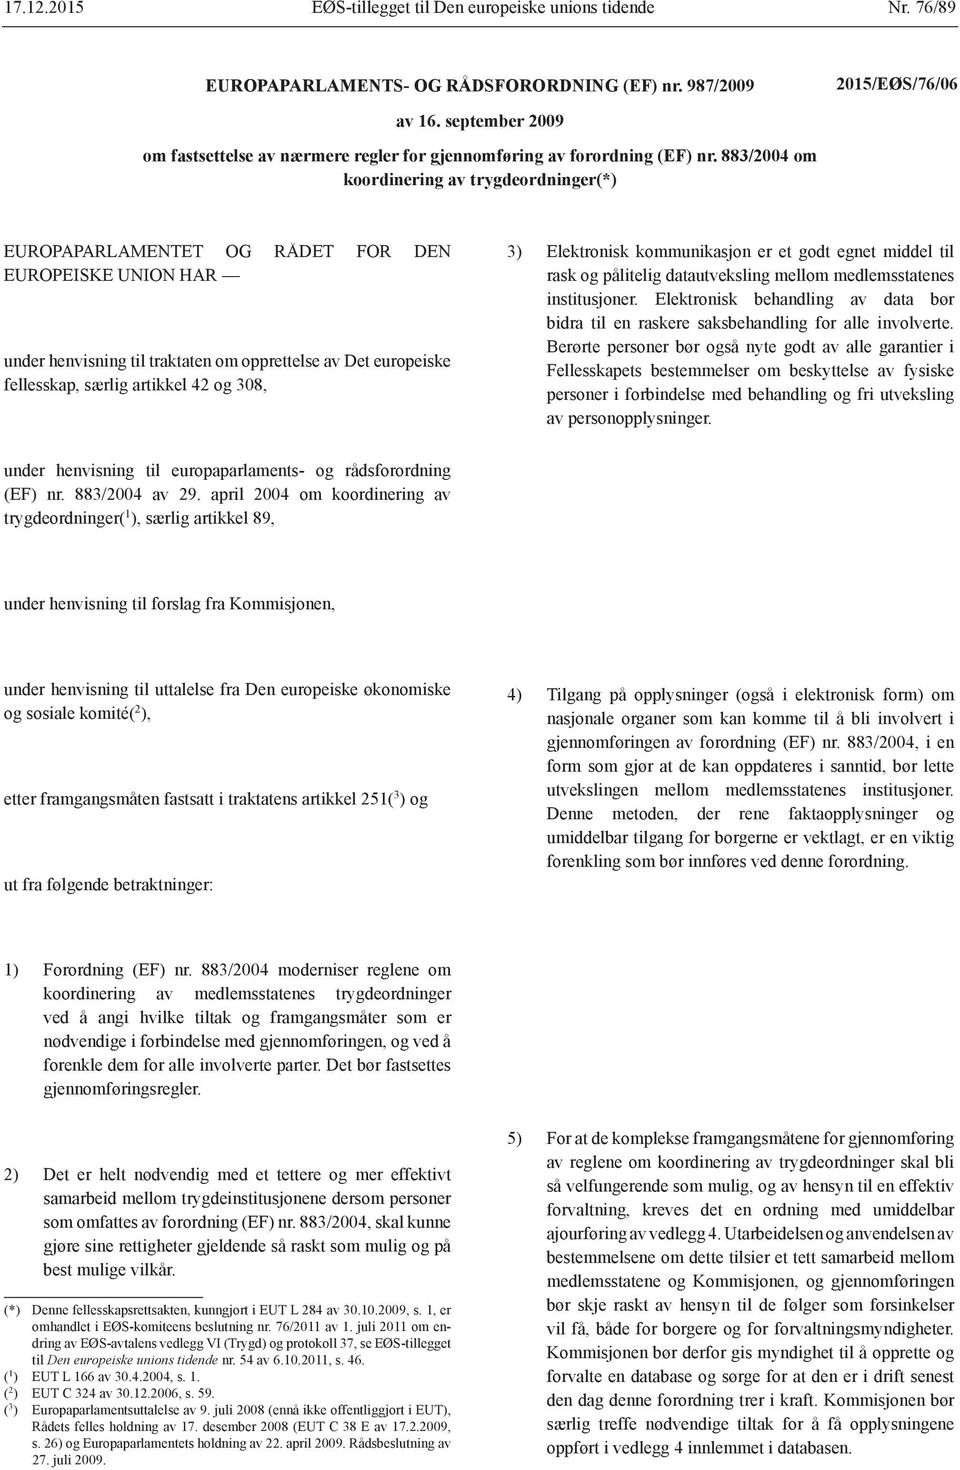 883/2004 om koordinering av trygdeordninger(*) EUROPAPARLAMENTET OG RÅDET FOR DEN EUROPEISKE UNION HAR under henvisning til traktaten om opprettelse av Det europeiske fellesskap, særlig artikkel 42